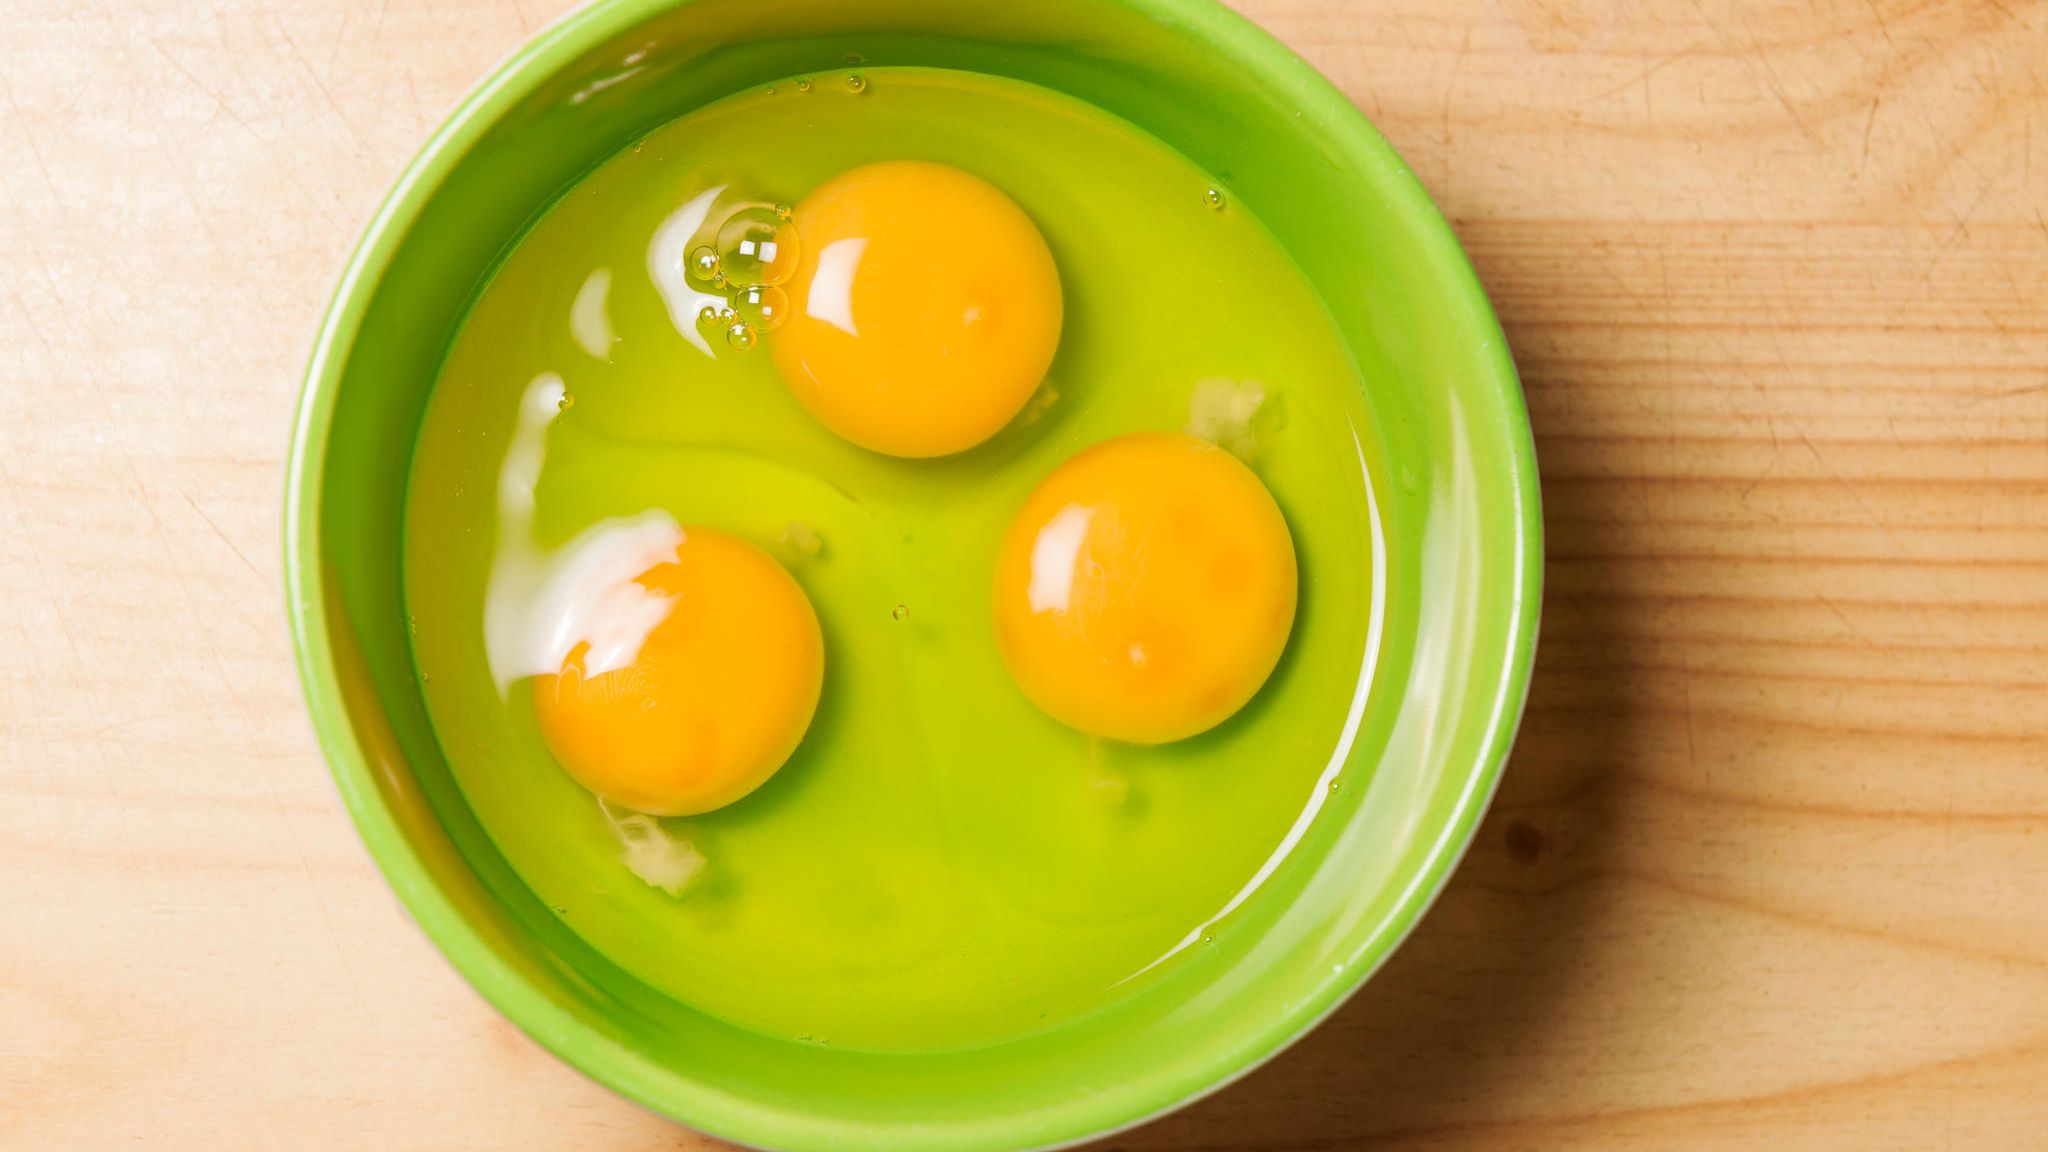 Müssen Eier im Kühlschrank lagern? Sieben Mythen rund ums Hühnerei ...